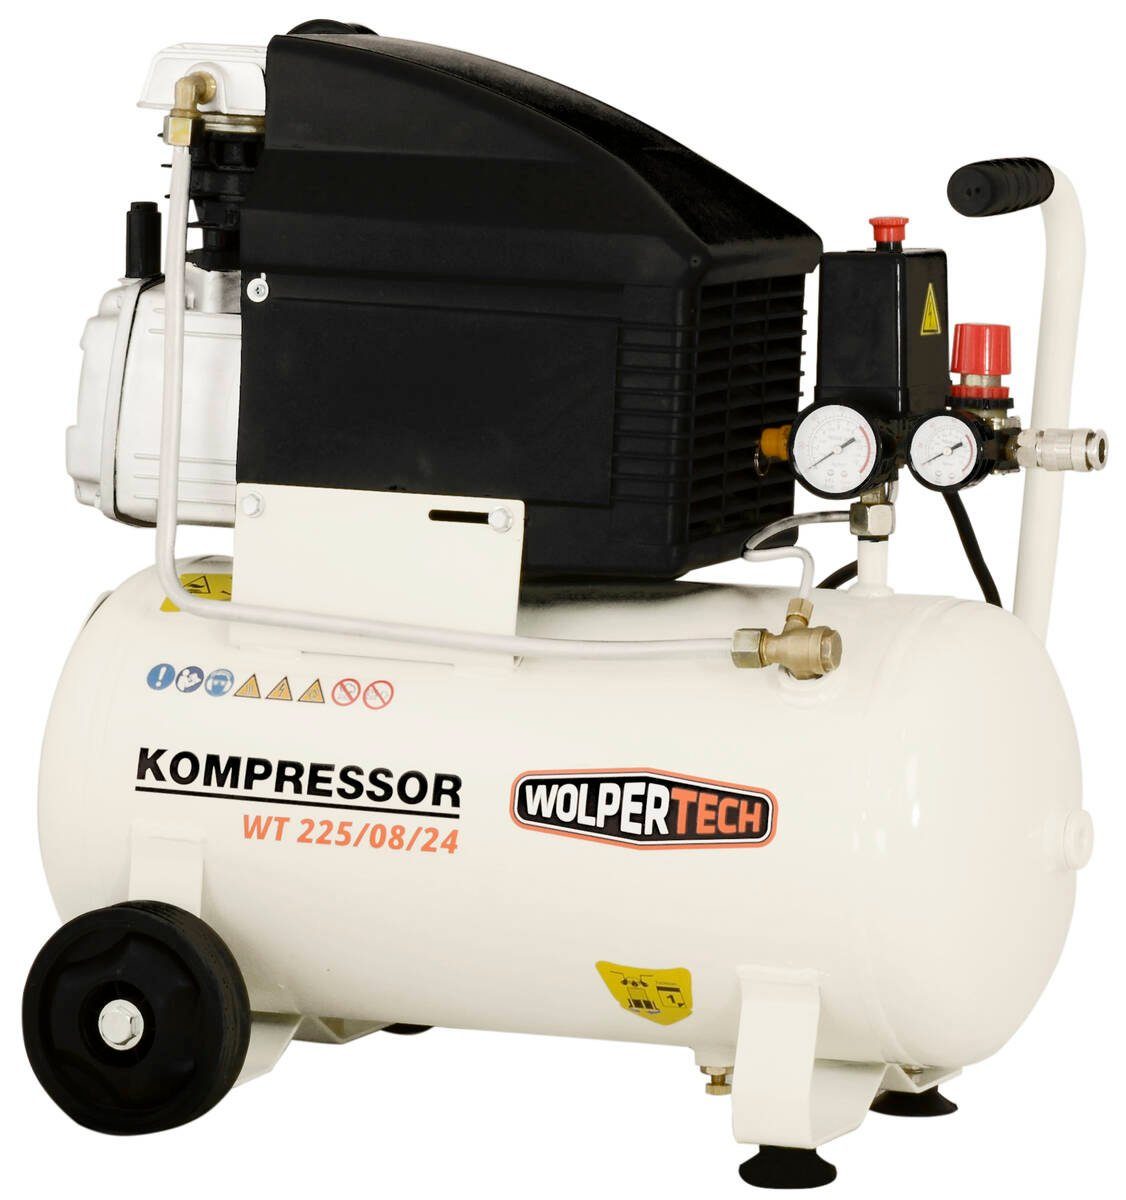 WOLPERTECH Kompressor WT 1500 Solo W, 225/08/24,